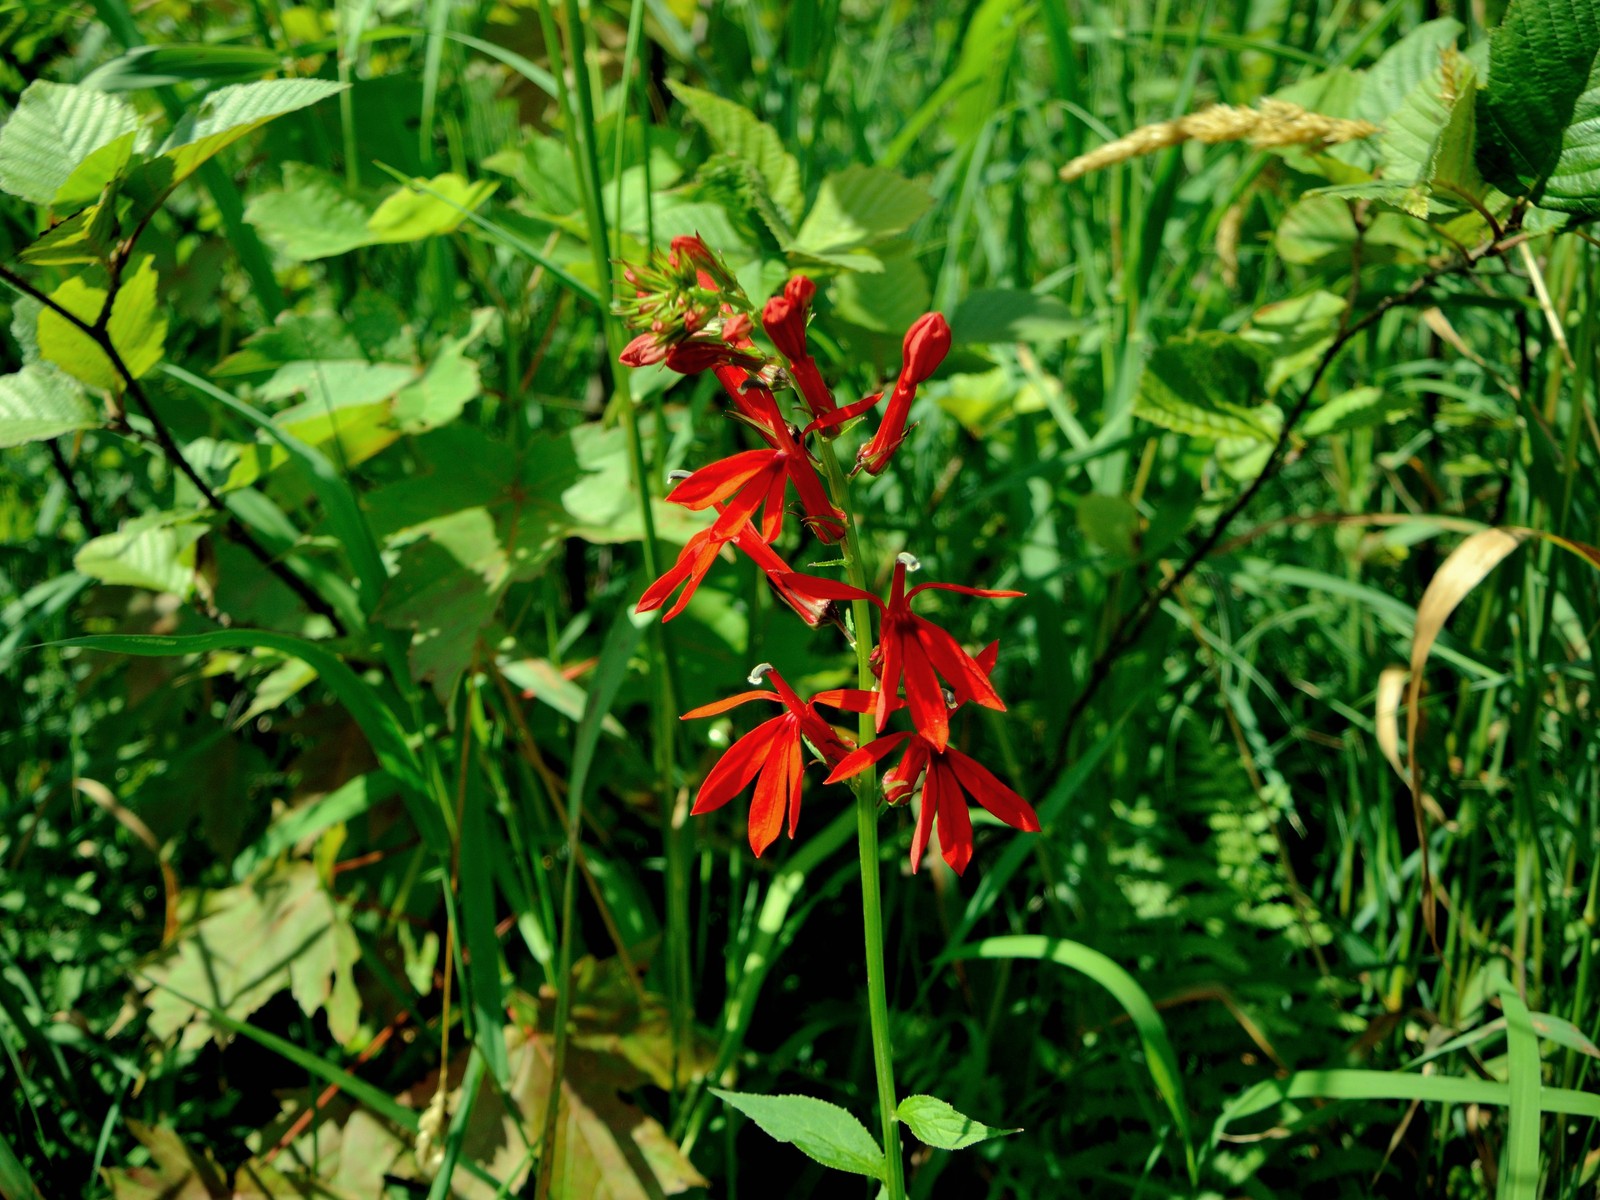 201308011202055 Cardinal-Flower (Lobelia cardinalis) bright red flowers - Manitoulin island.JPG